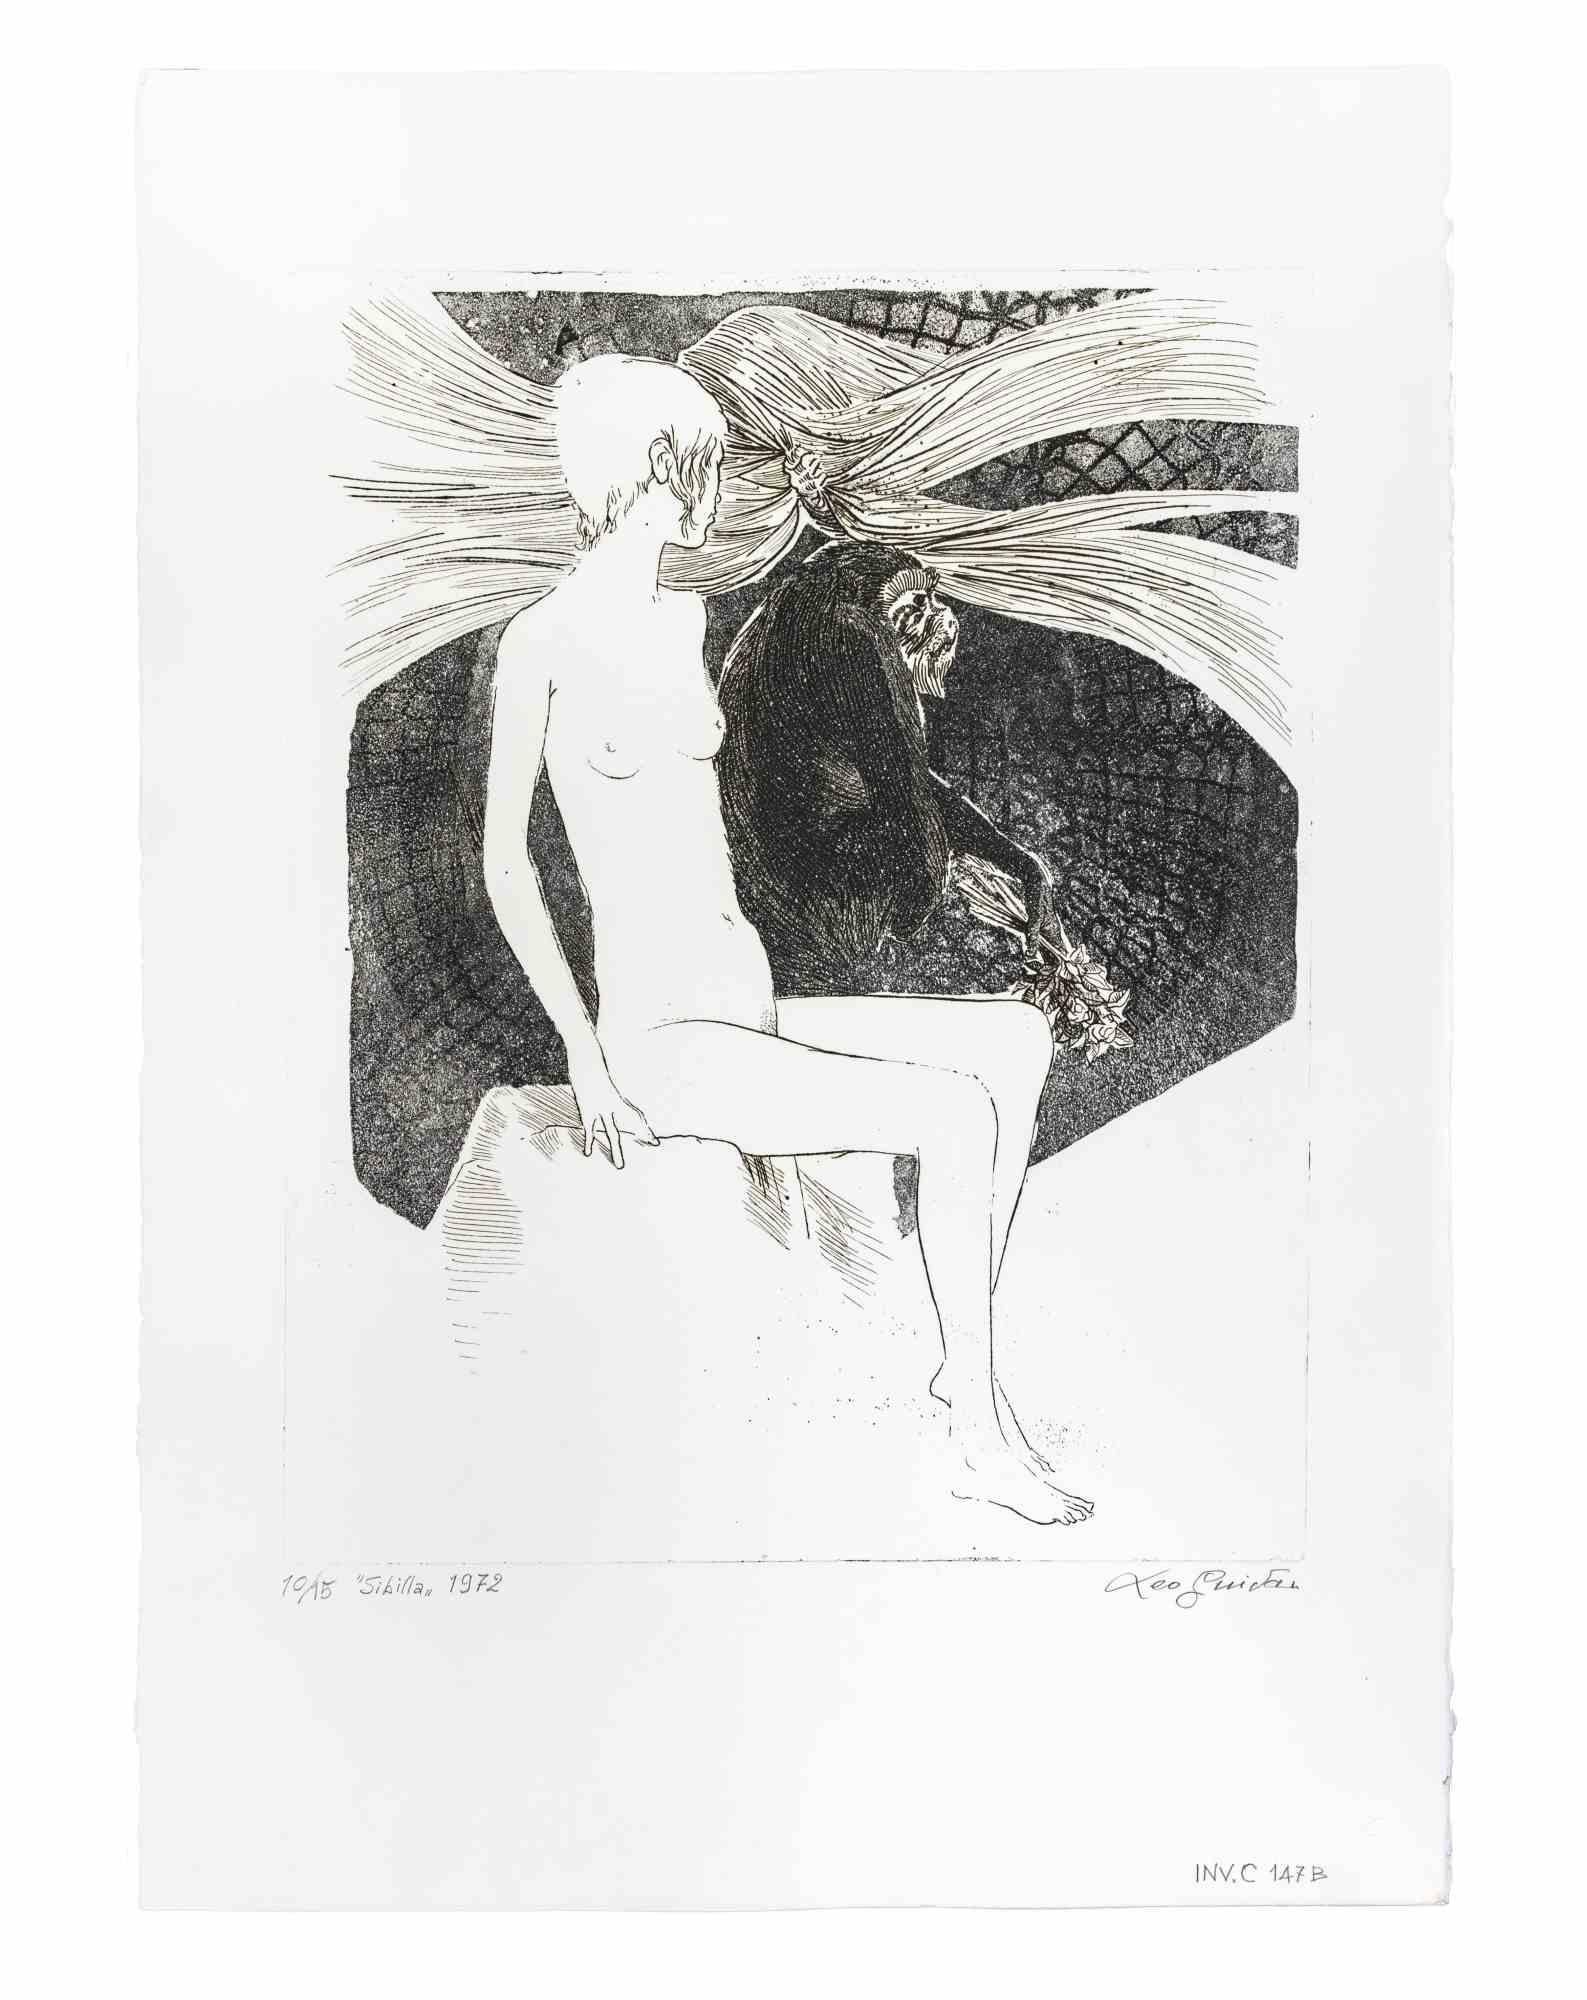 Sibilla (Sibylle) ist ein Kunstwerk des italienischen zeitgenössischen Künstlers  Leo Guida (1992 - 2017) in 1975s.

Original-Radierung in Schwarz-Weiß auf Papier.

Rechts unten am Rand handschriftlich signiert, links unten betitelt, datiert und